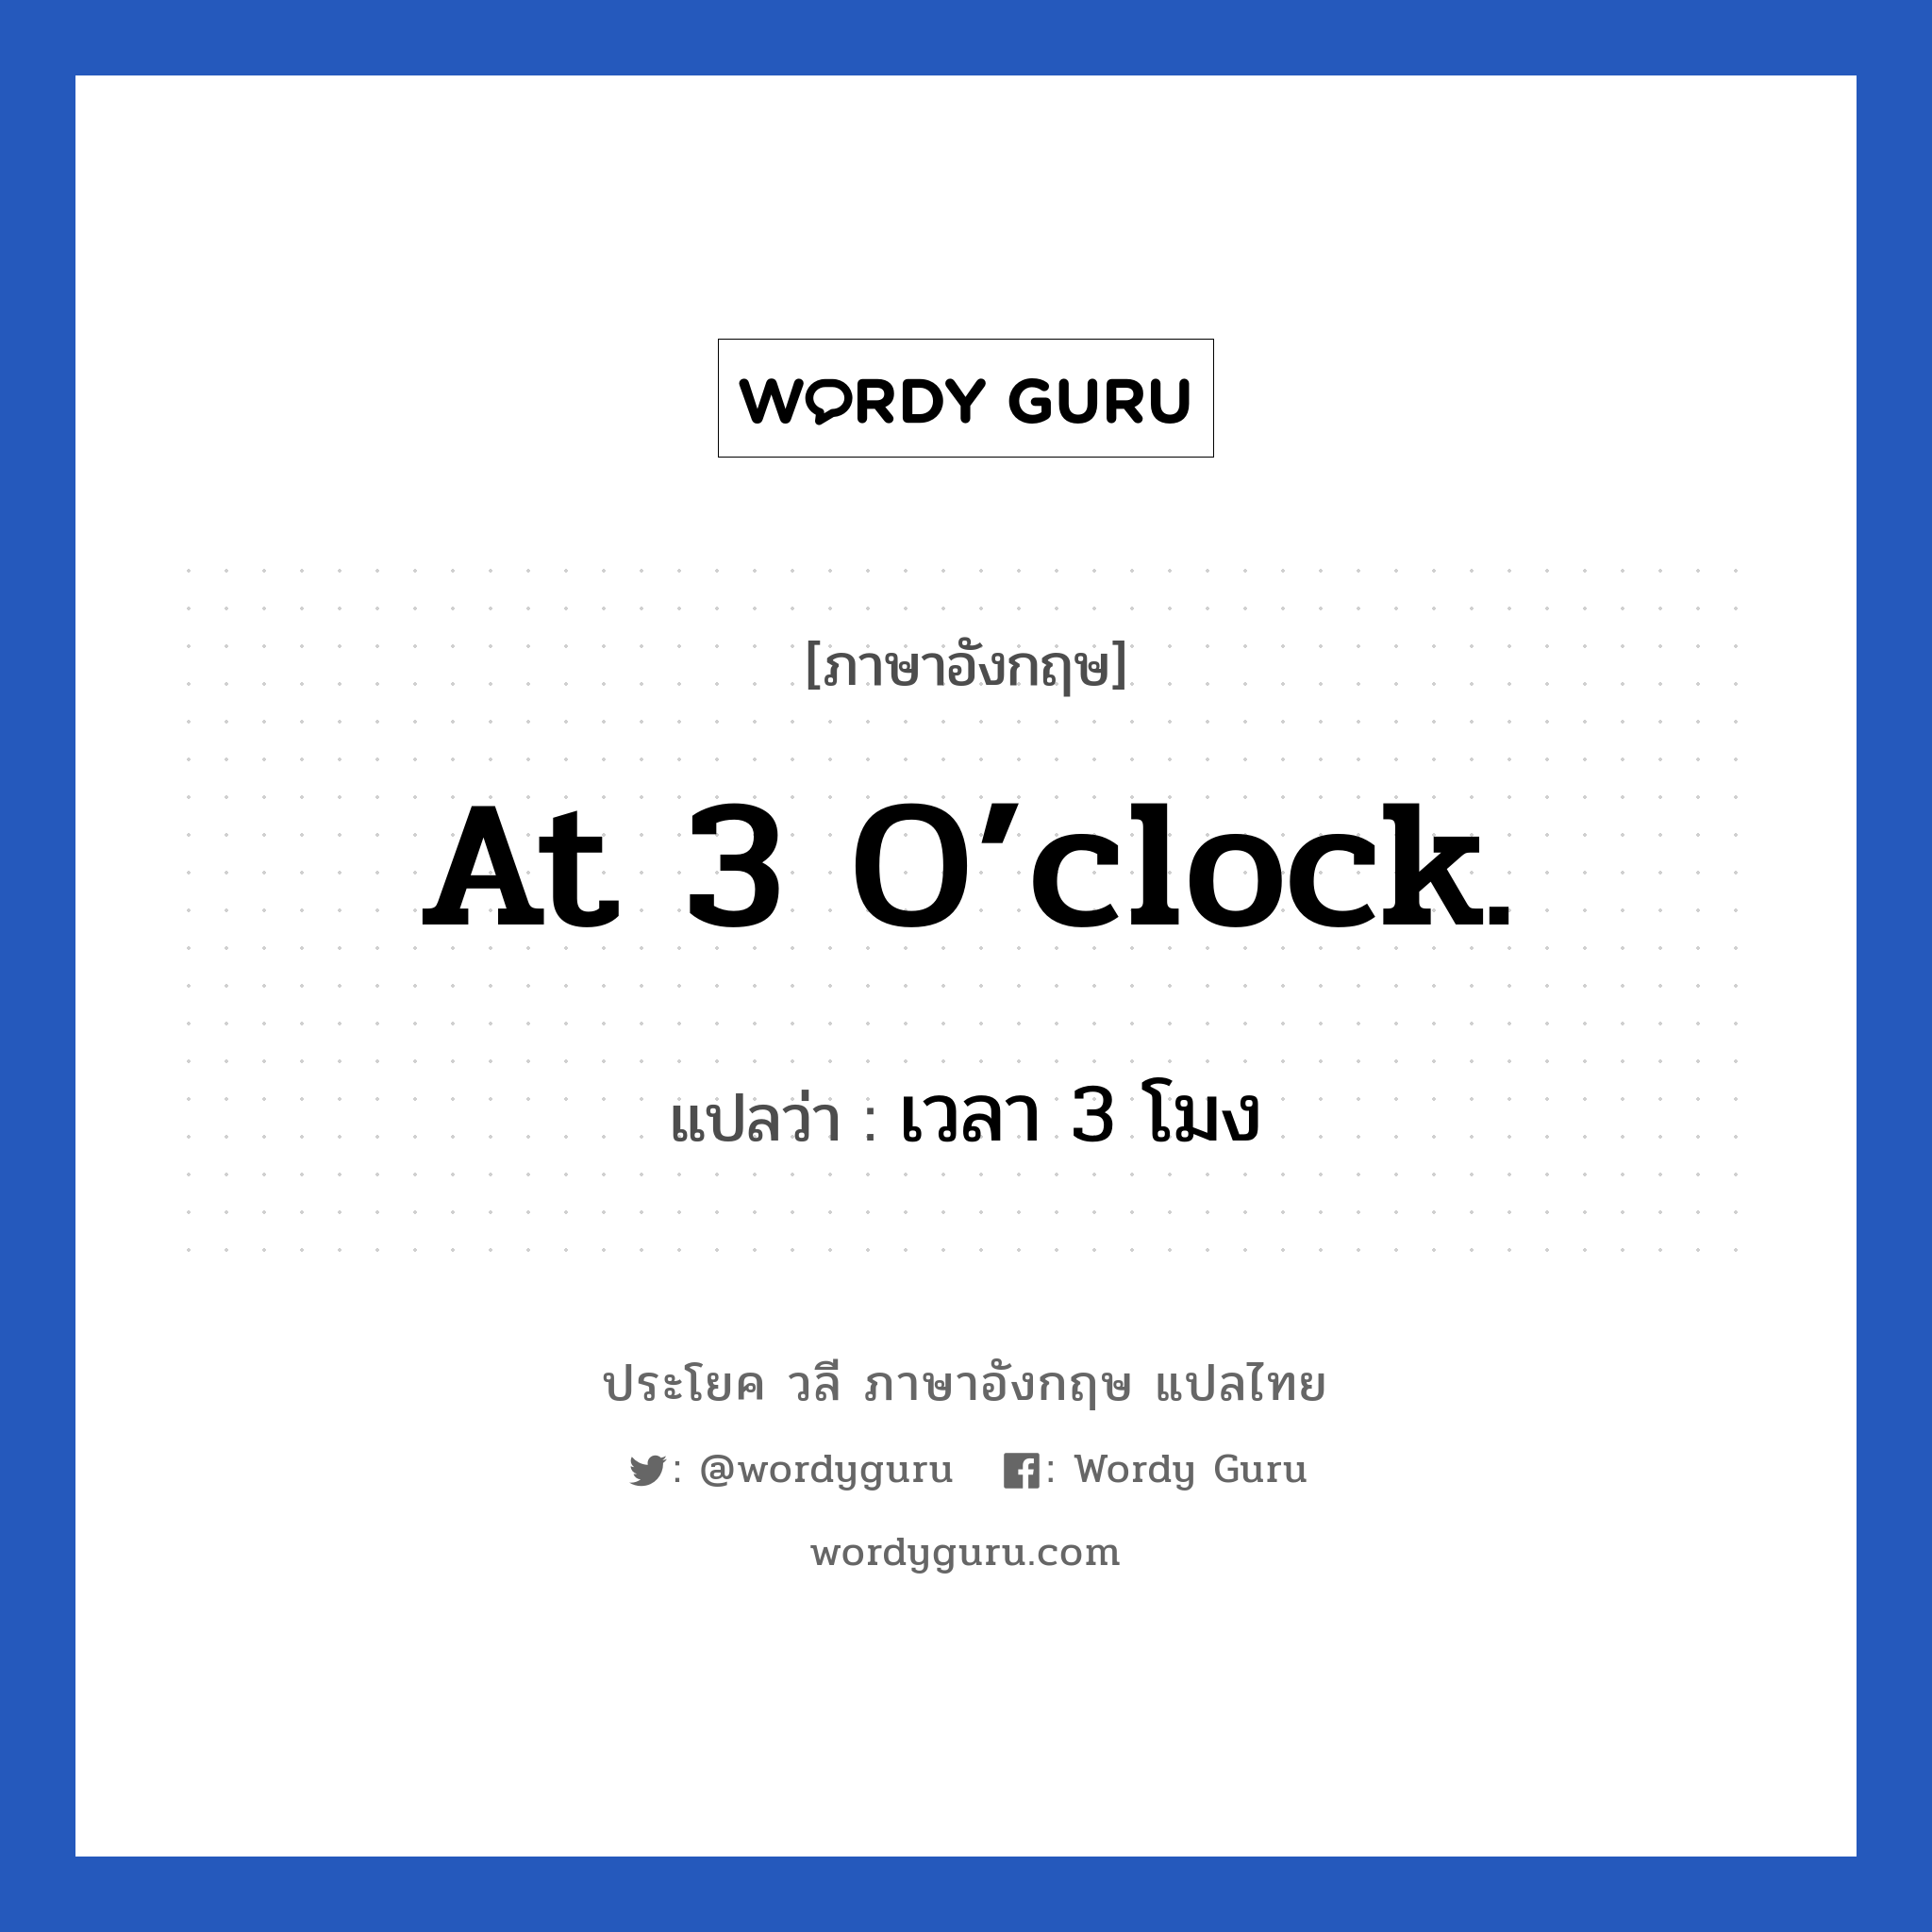 เวลา 3 โมง ภาษาอังกฤษ?, วลีภาษาอังกฤษ เวลา 3 โมง แปลว่า At 3 o’clock.